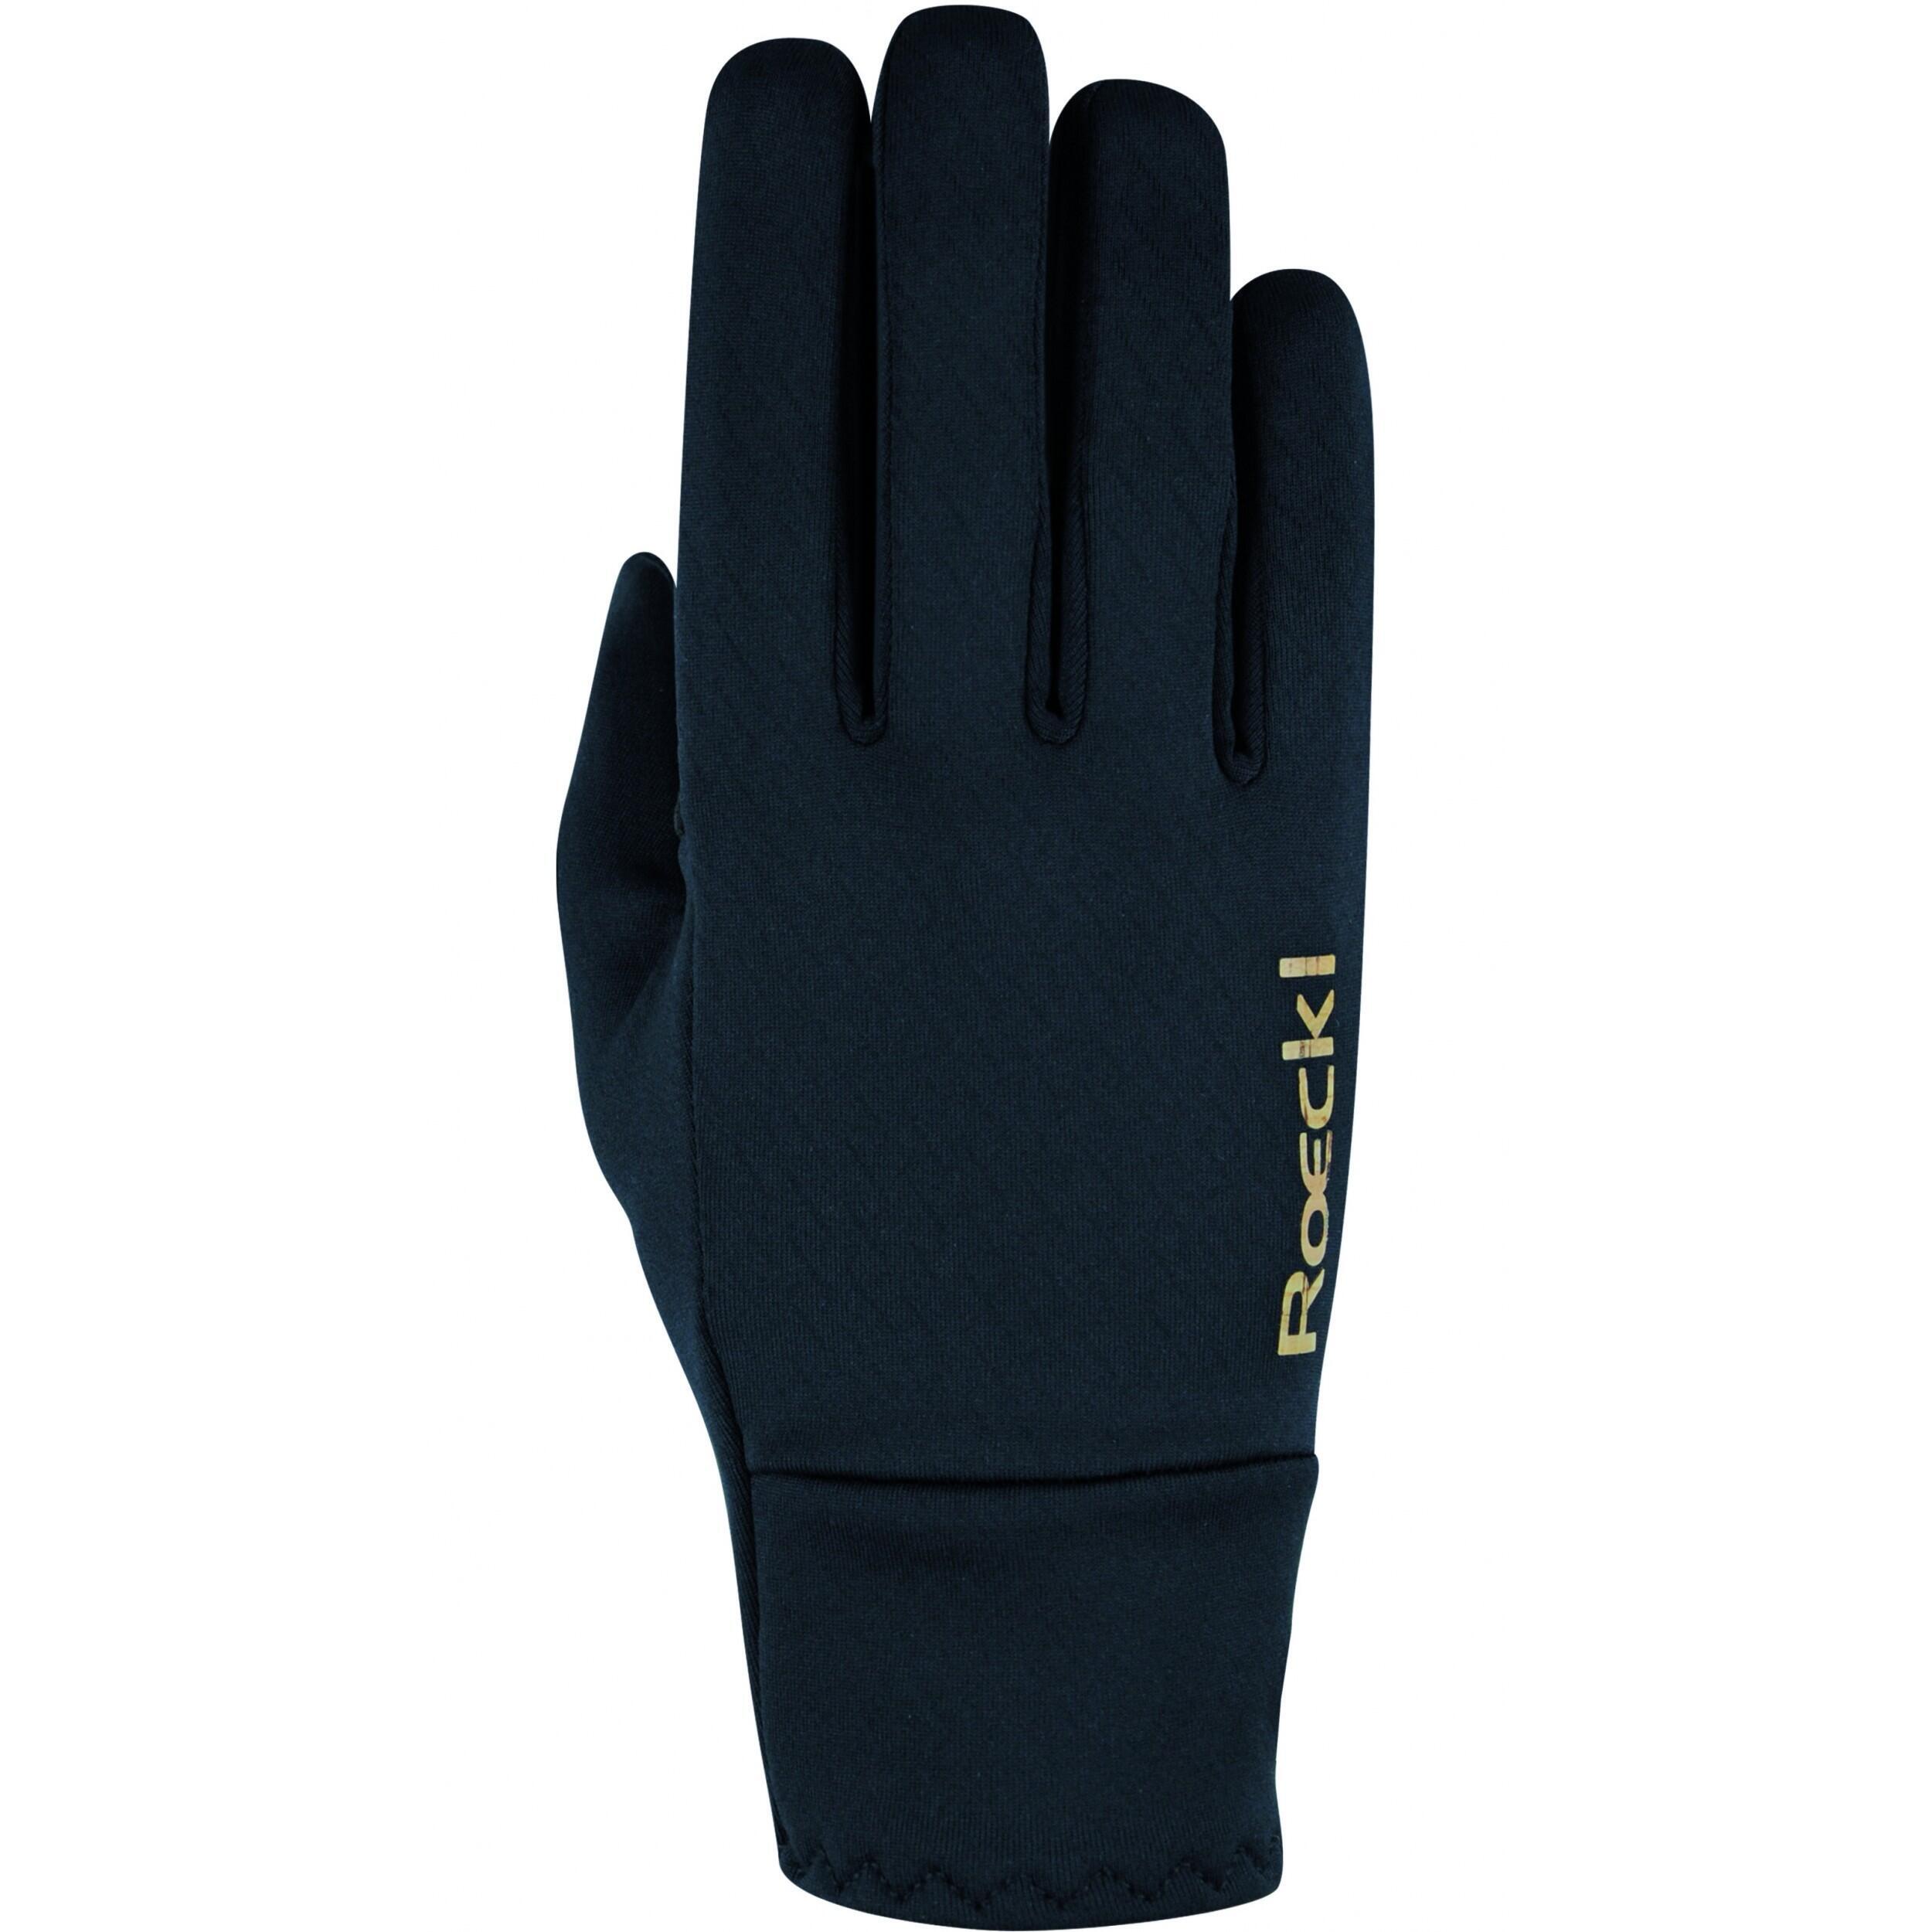 защитные противоскользящие перчатки для верховой езды Перчатки Roeckl для верховой езды, черный